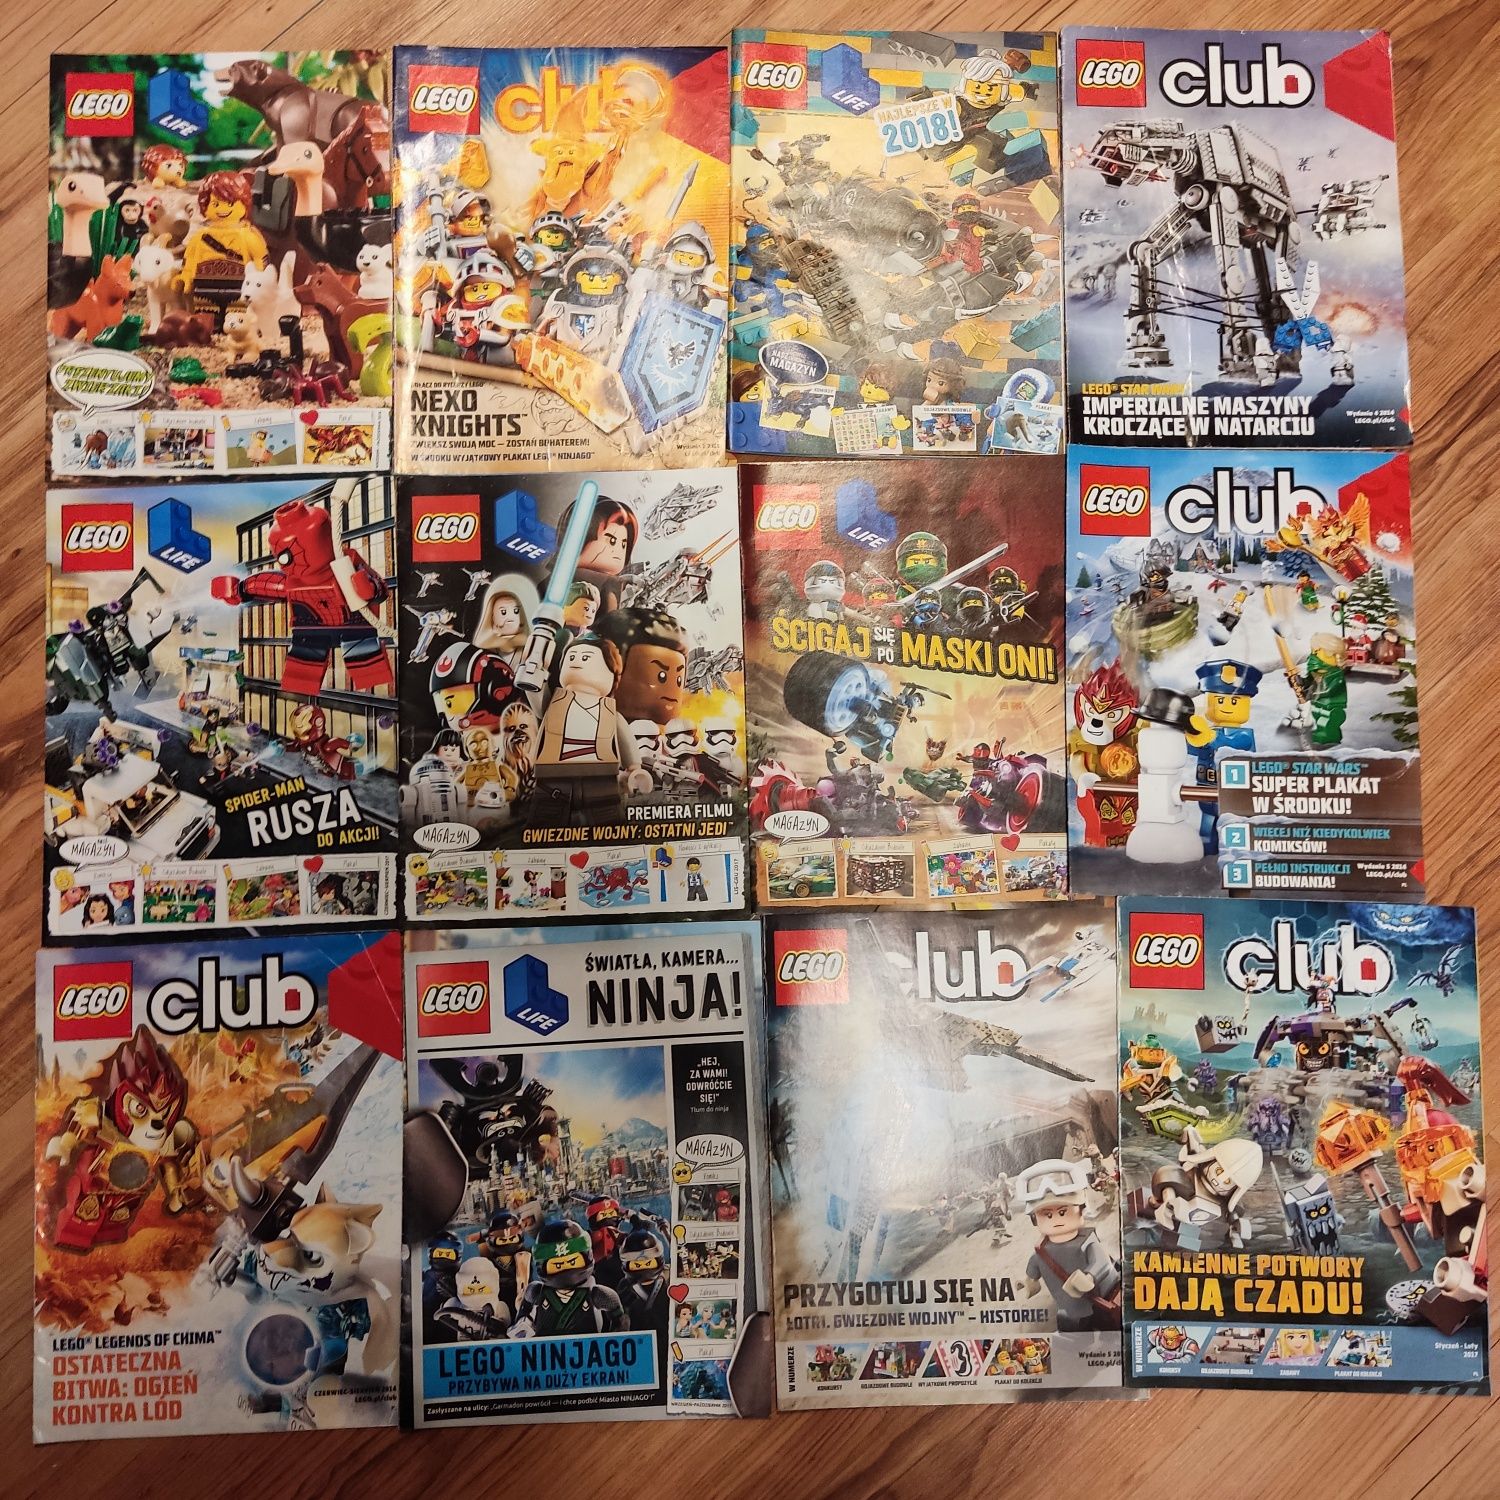 LEGO Club gazetka 19 szt z plakatami